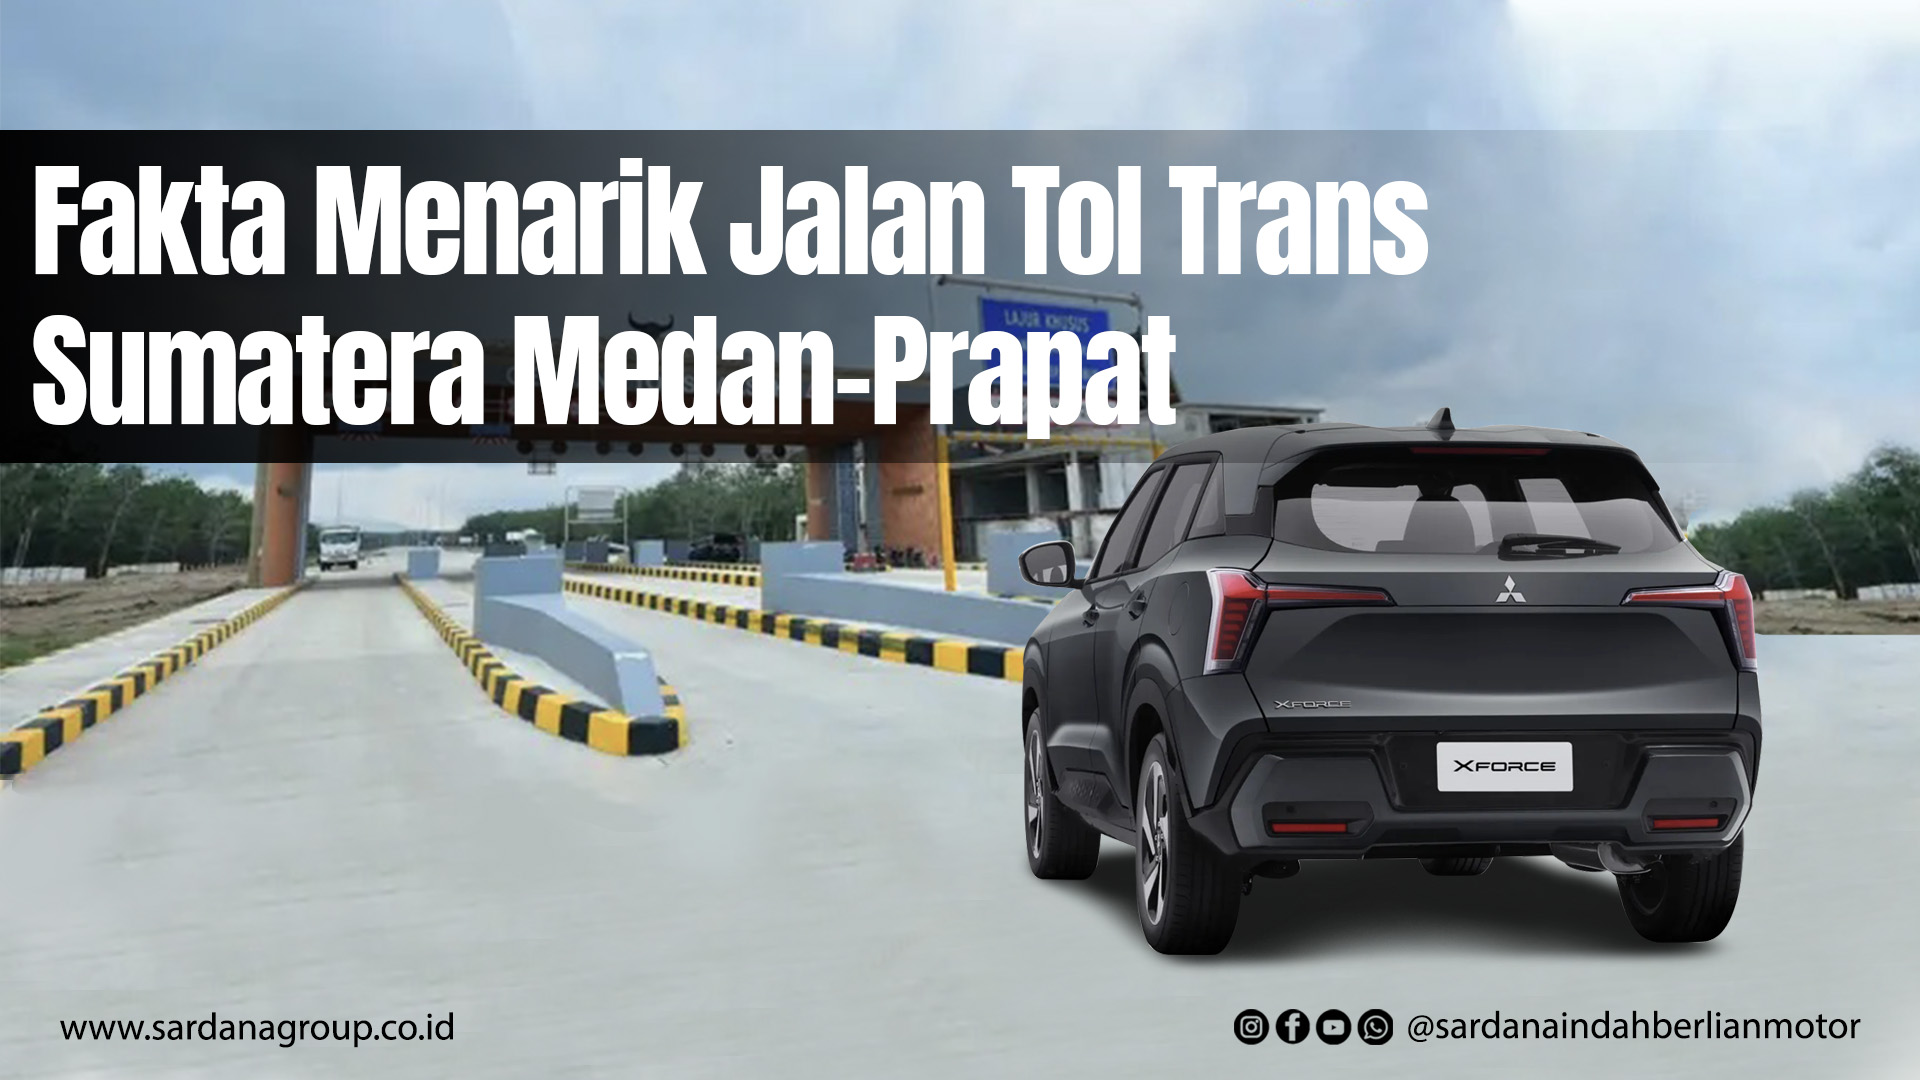 Fakta Menarik Jalan Tol Trans Sumatera Medan-Parapat